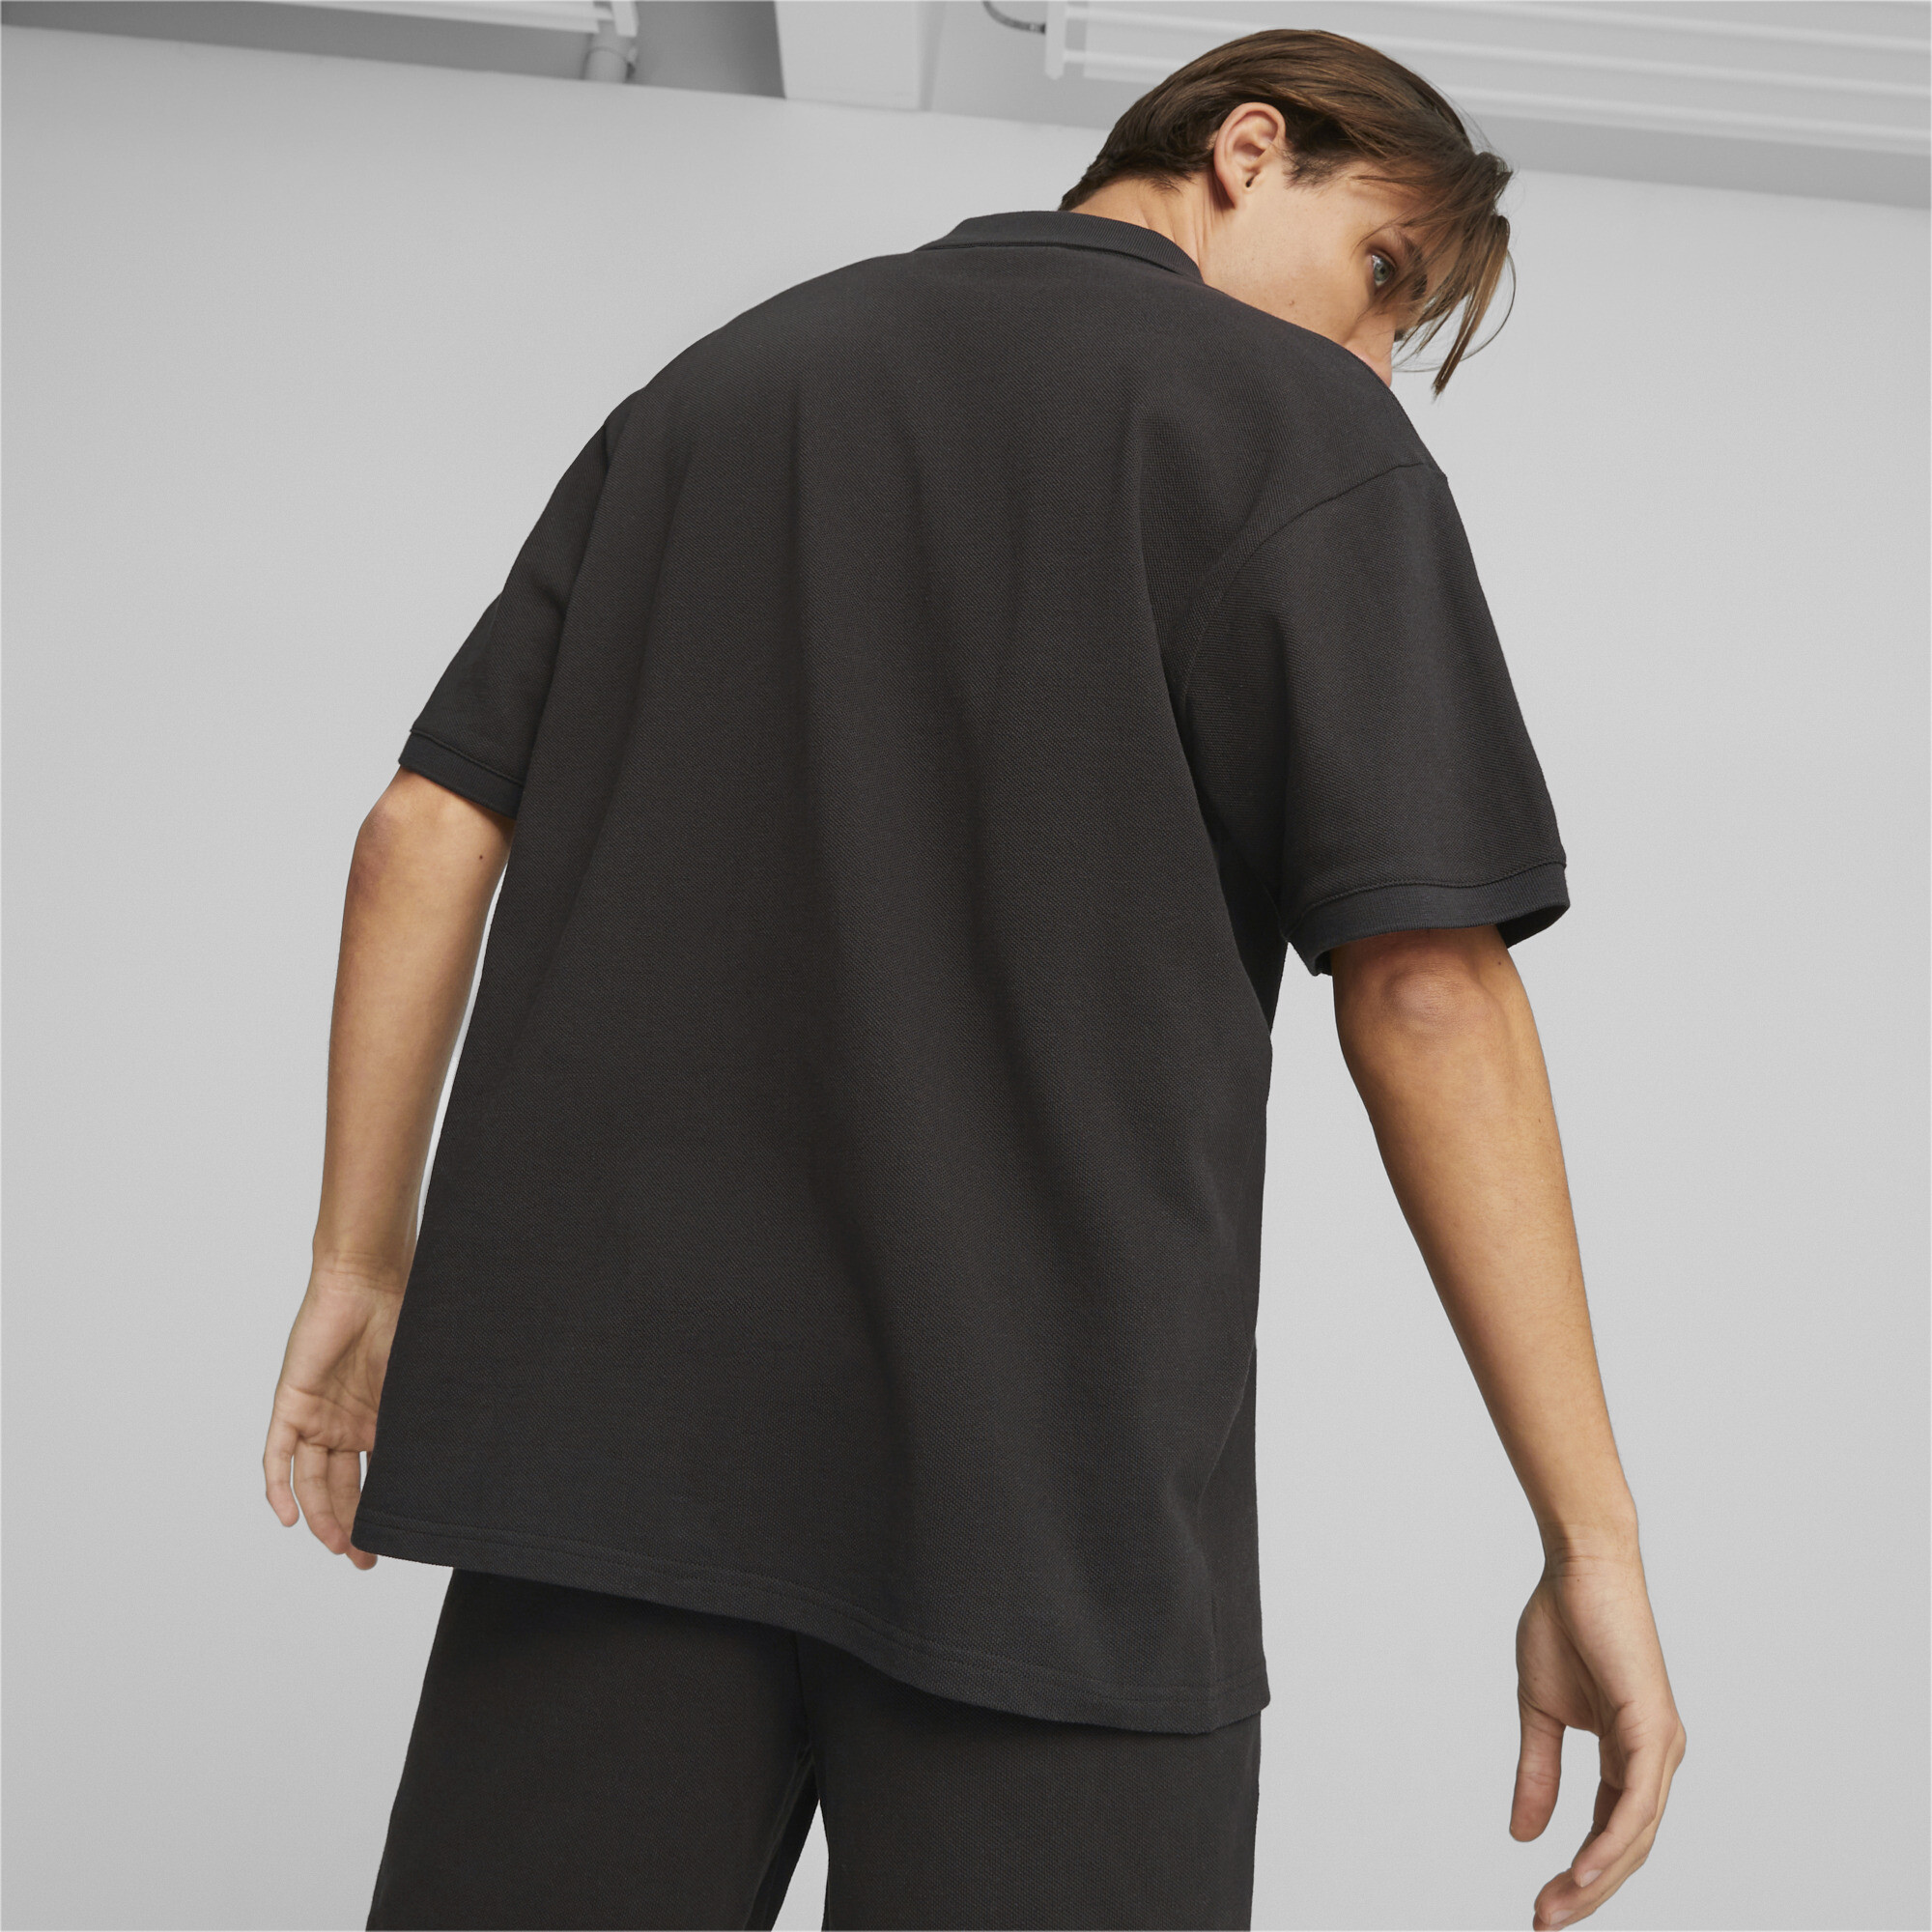 Men's PUMA Classics Pique Shirt Men In Black, Size Small